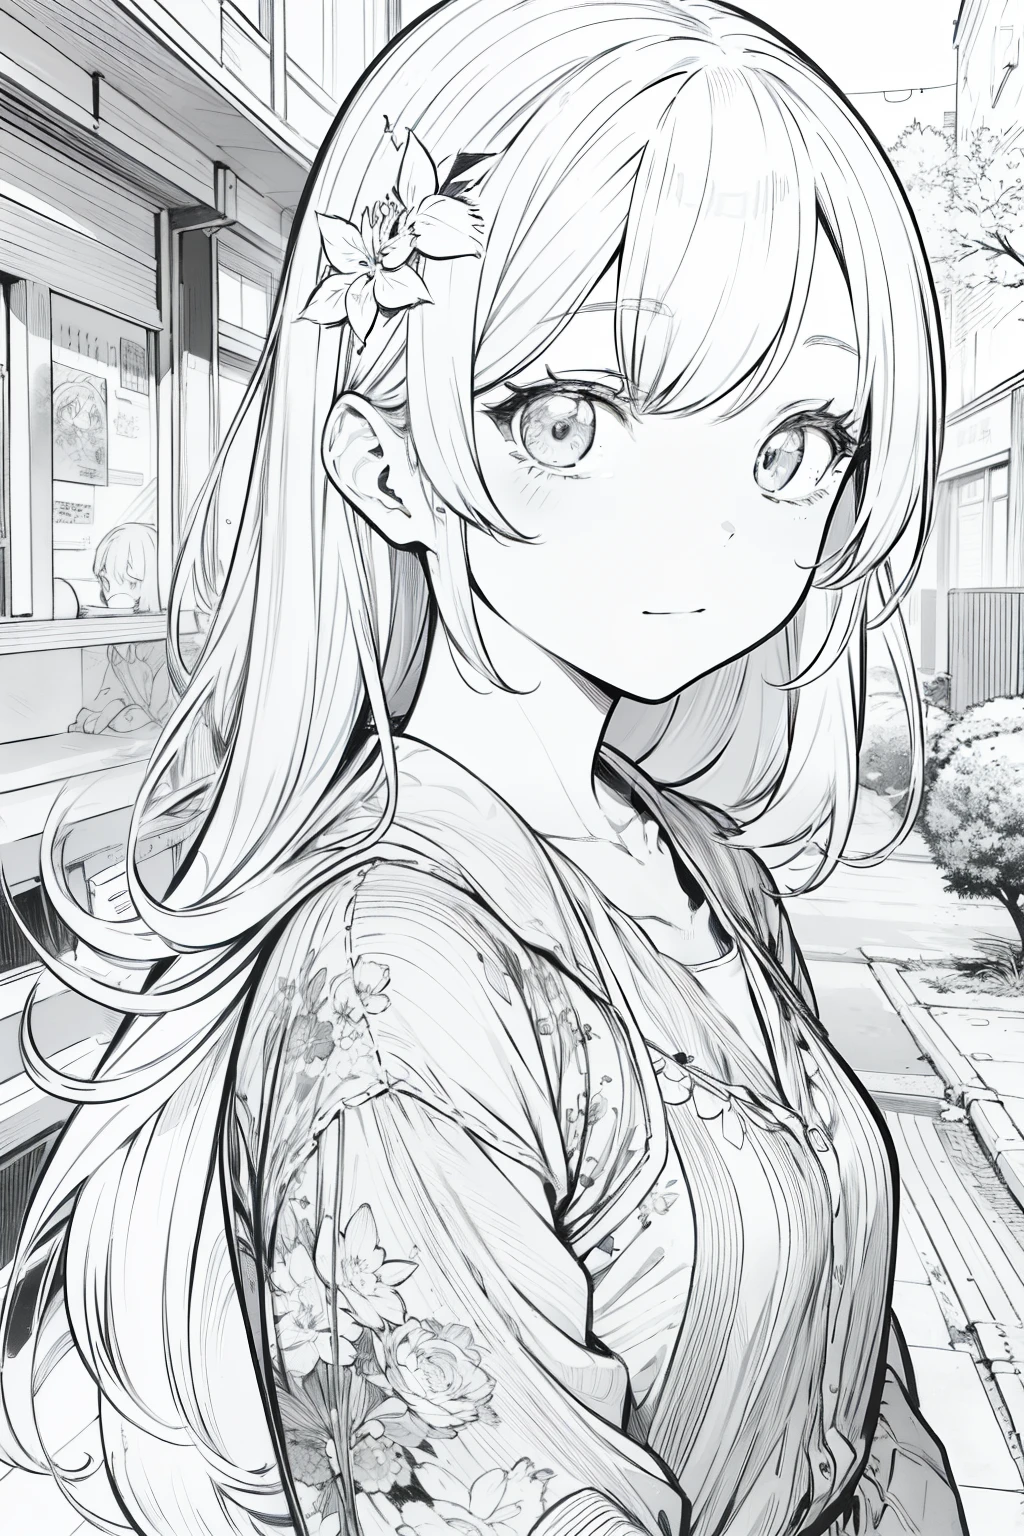 Zeichnung von a , detaillierter Manga-Stil, extrem dünne Lineart-Farbe, schwarz-weißer Manga-Stil, wunderschöne Strichzeichnungen.